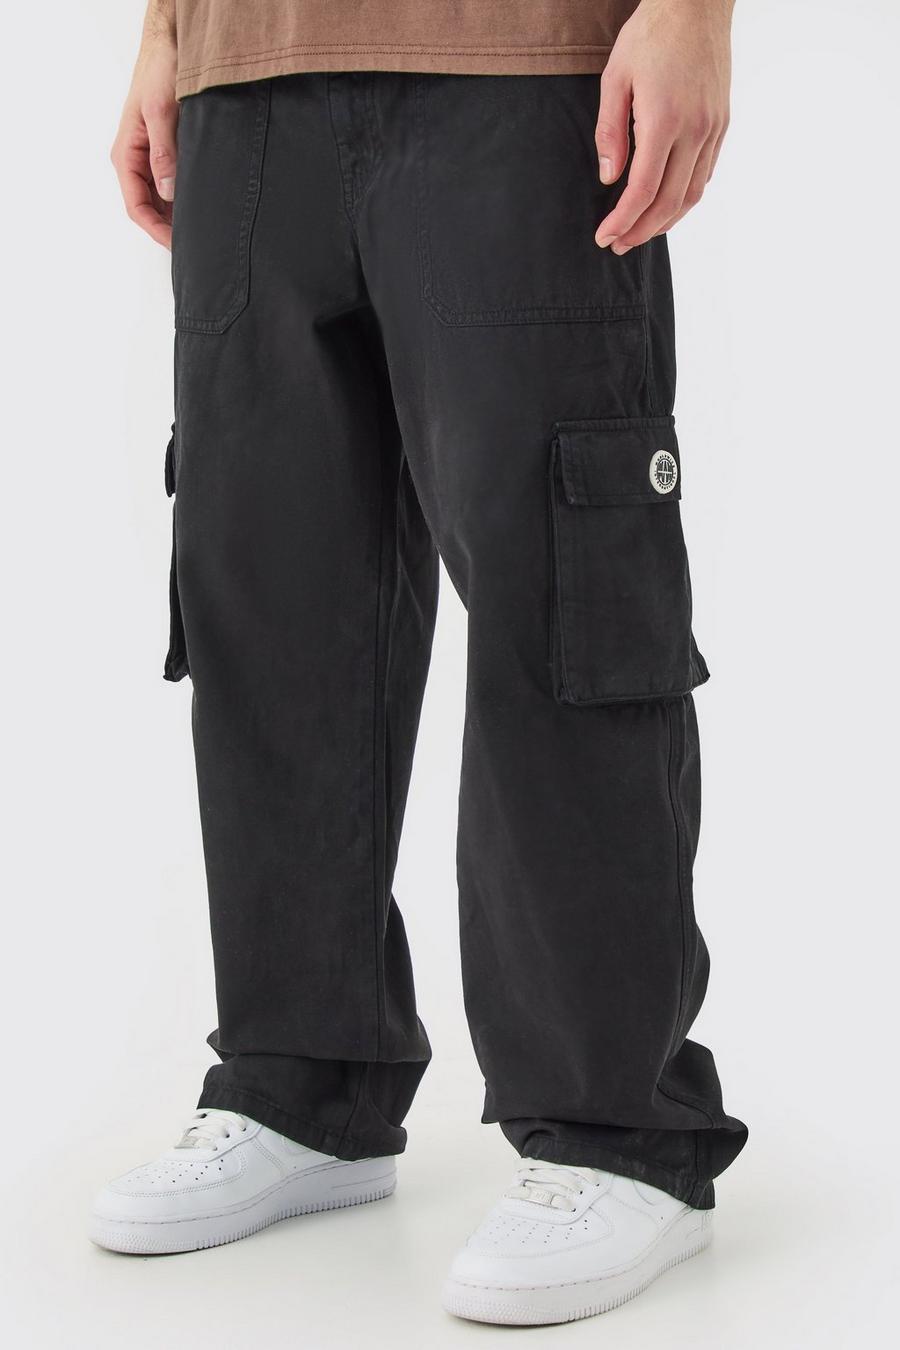 Pantalón cargo con cintura fija, cremallera y etiqueta de goma, Black